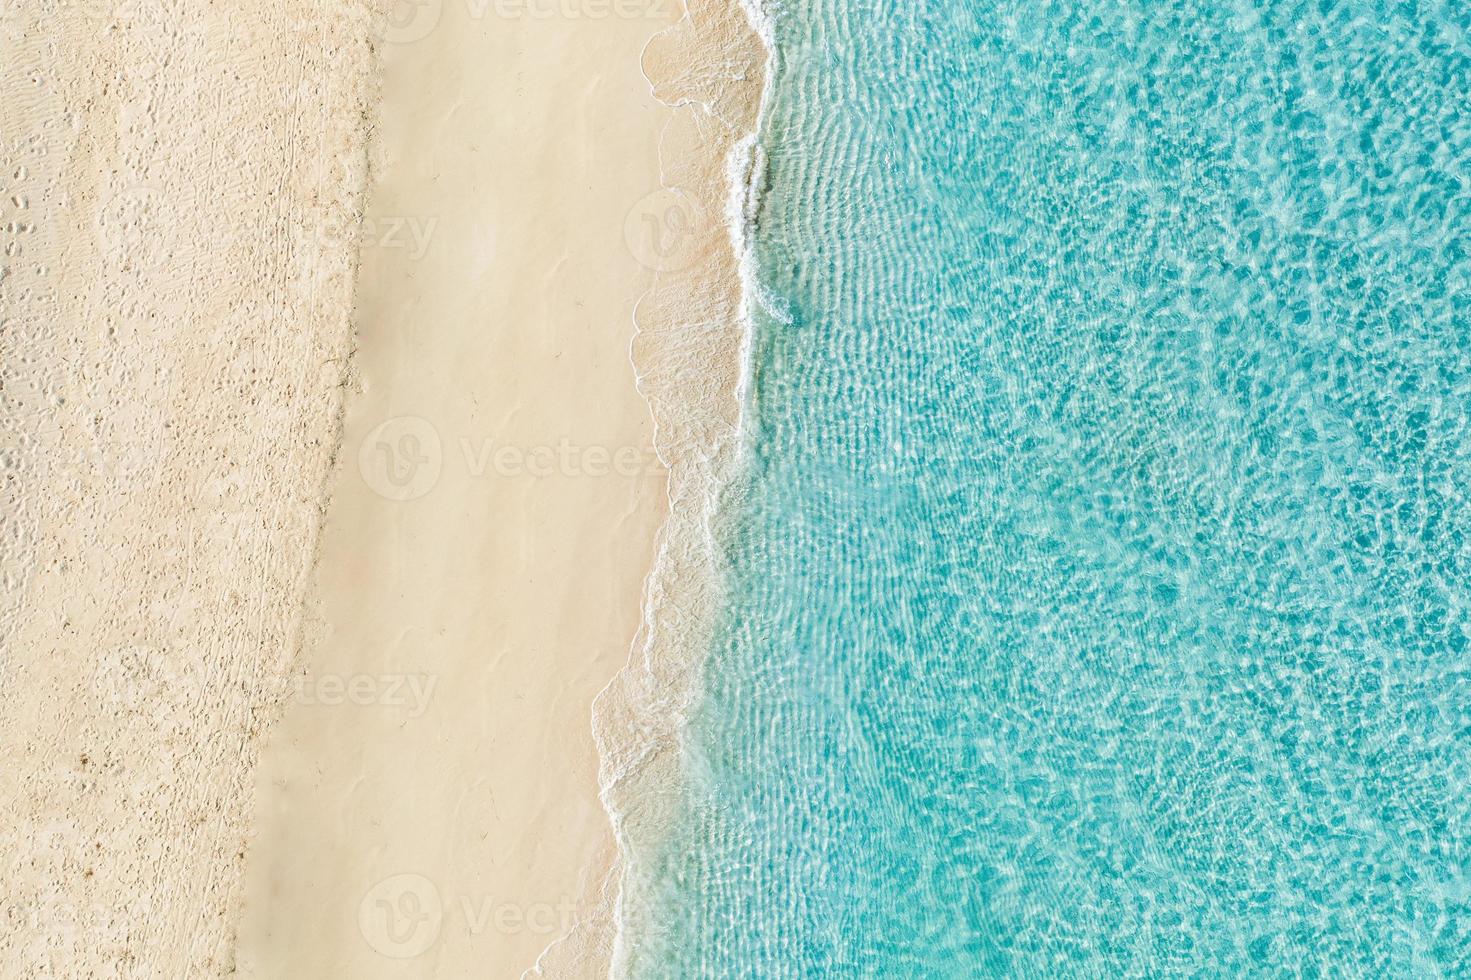 relaxante cena aérea de praia, banner de modelo de férias de férias de verão. ondas surfam com incrível lagoa azul do oceano, costa do mar, litoral. vista superior do drone aéreo perfeito. praia tranquila e iluminada, beira-mar foto